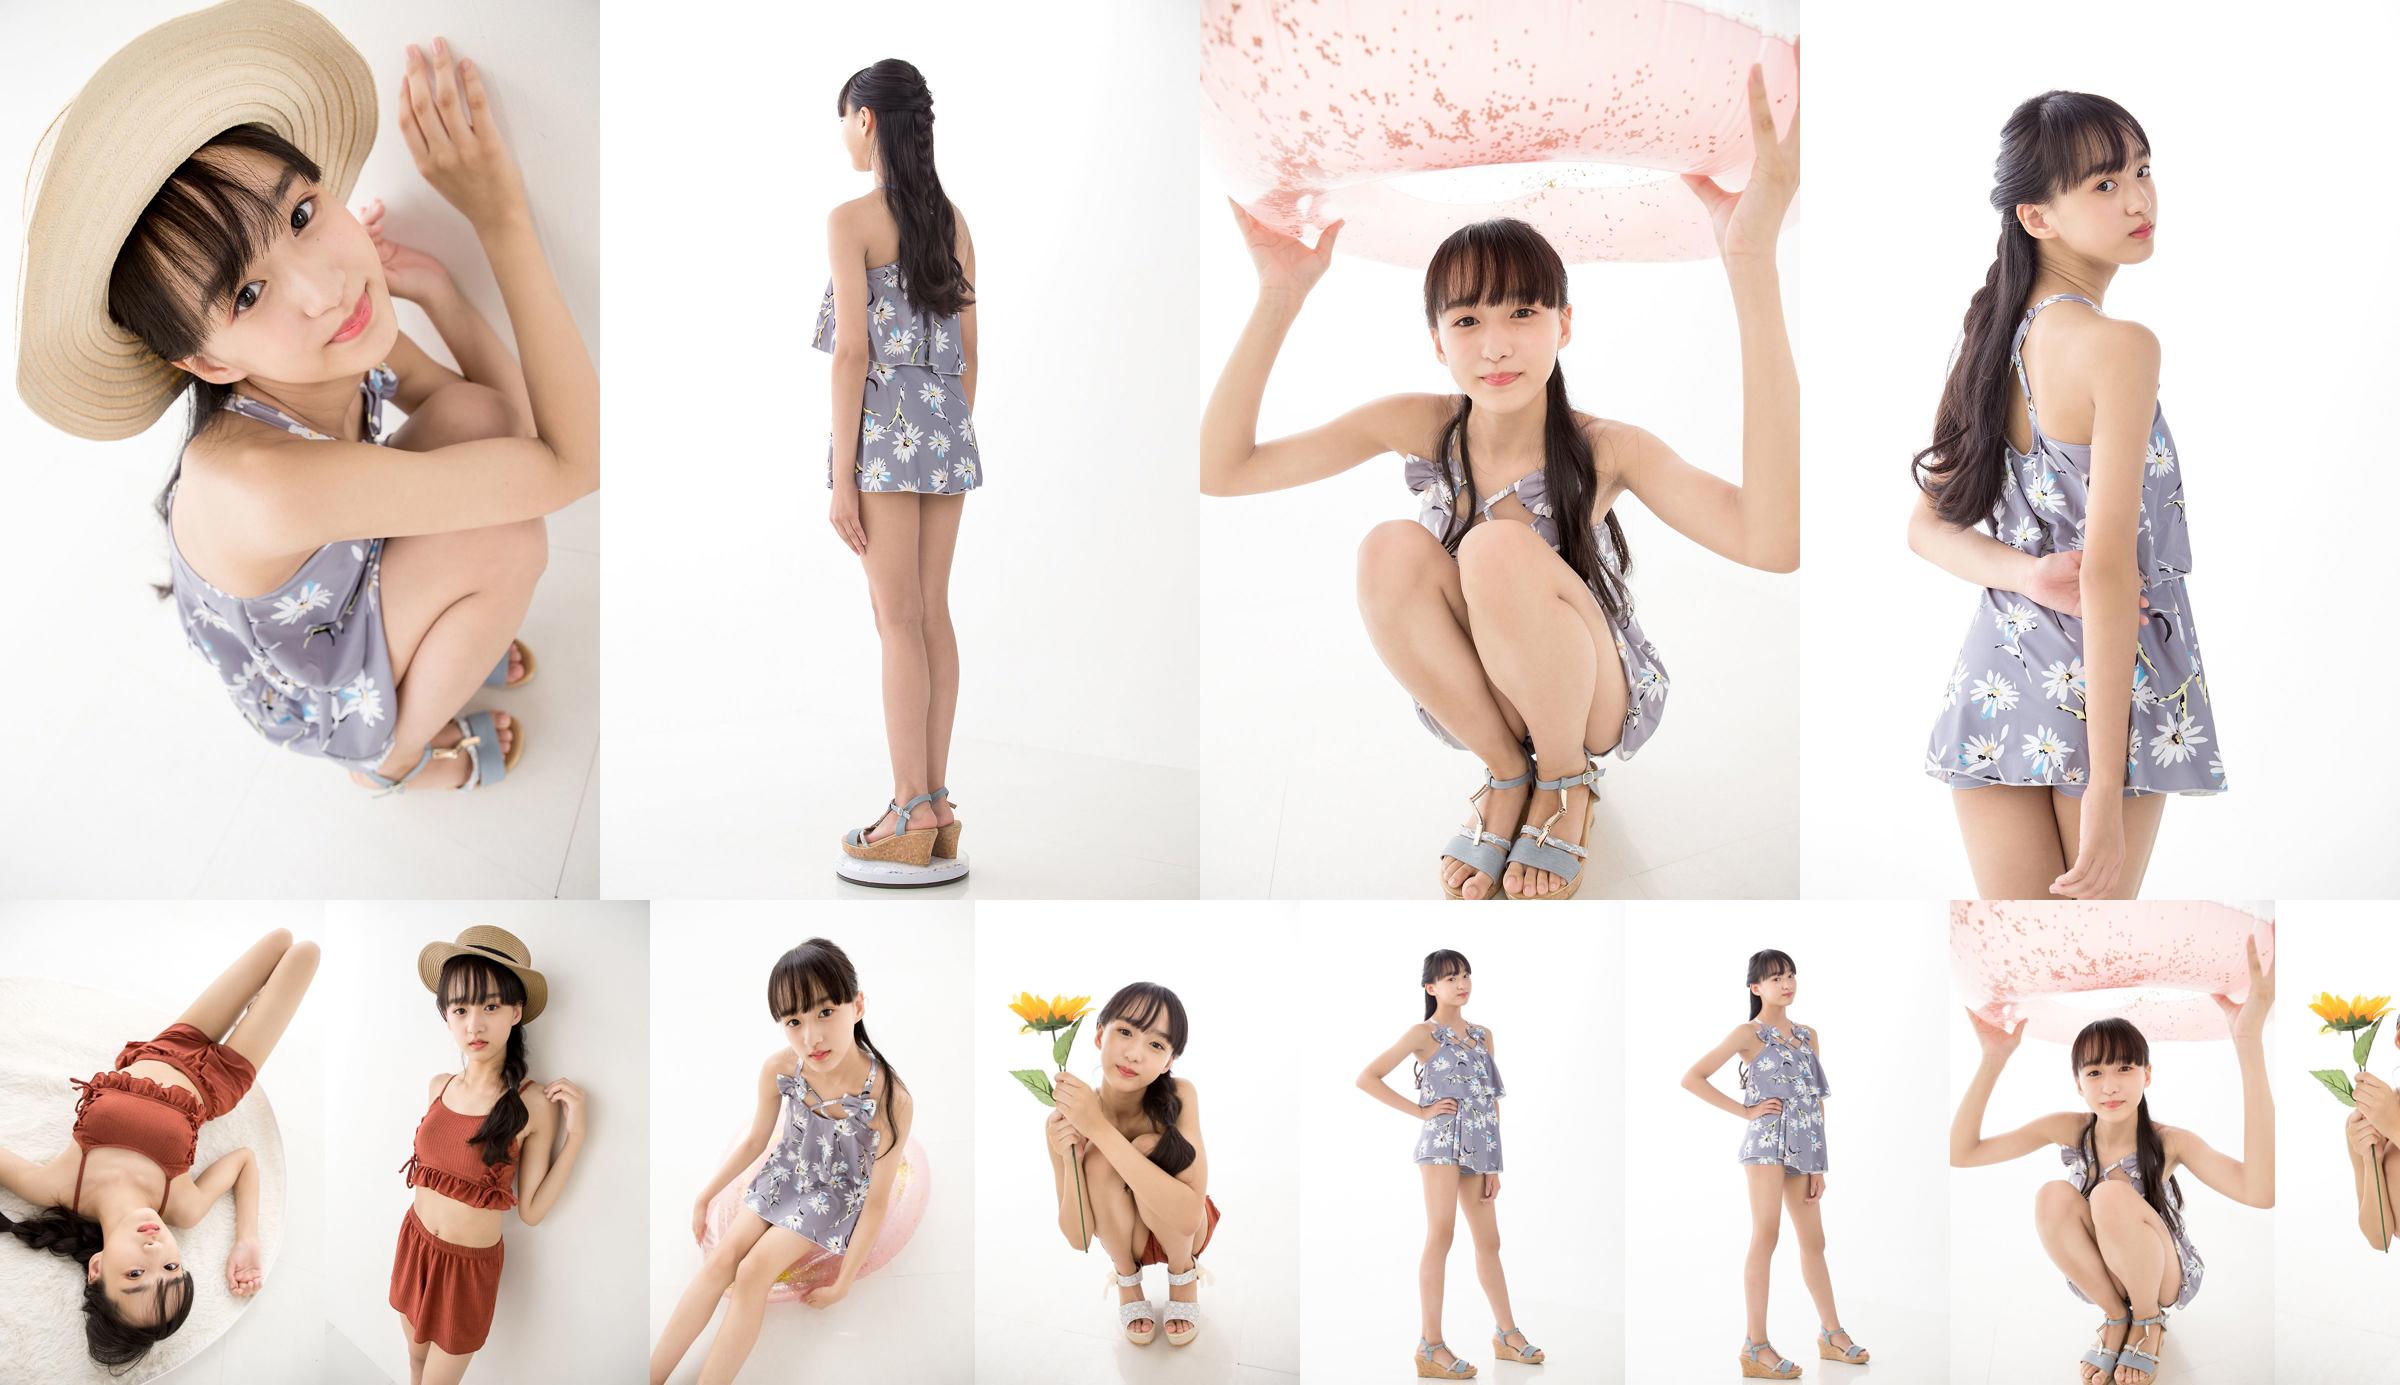 [Minisuka.tv] Yuna Sakiyama 咲 山 ゆ な - Fresh-idol Gallery 06 No.3e5013 Trang 1